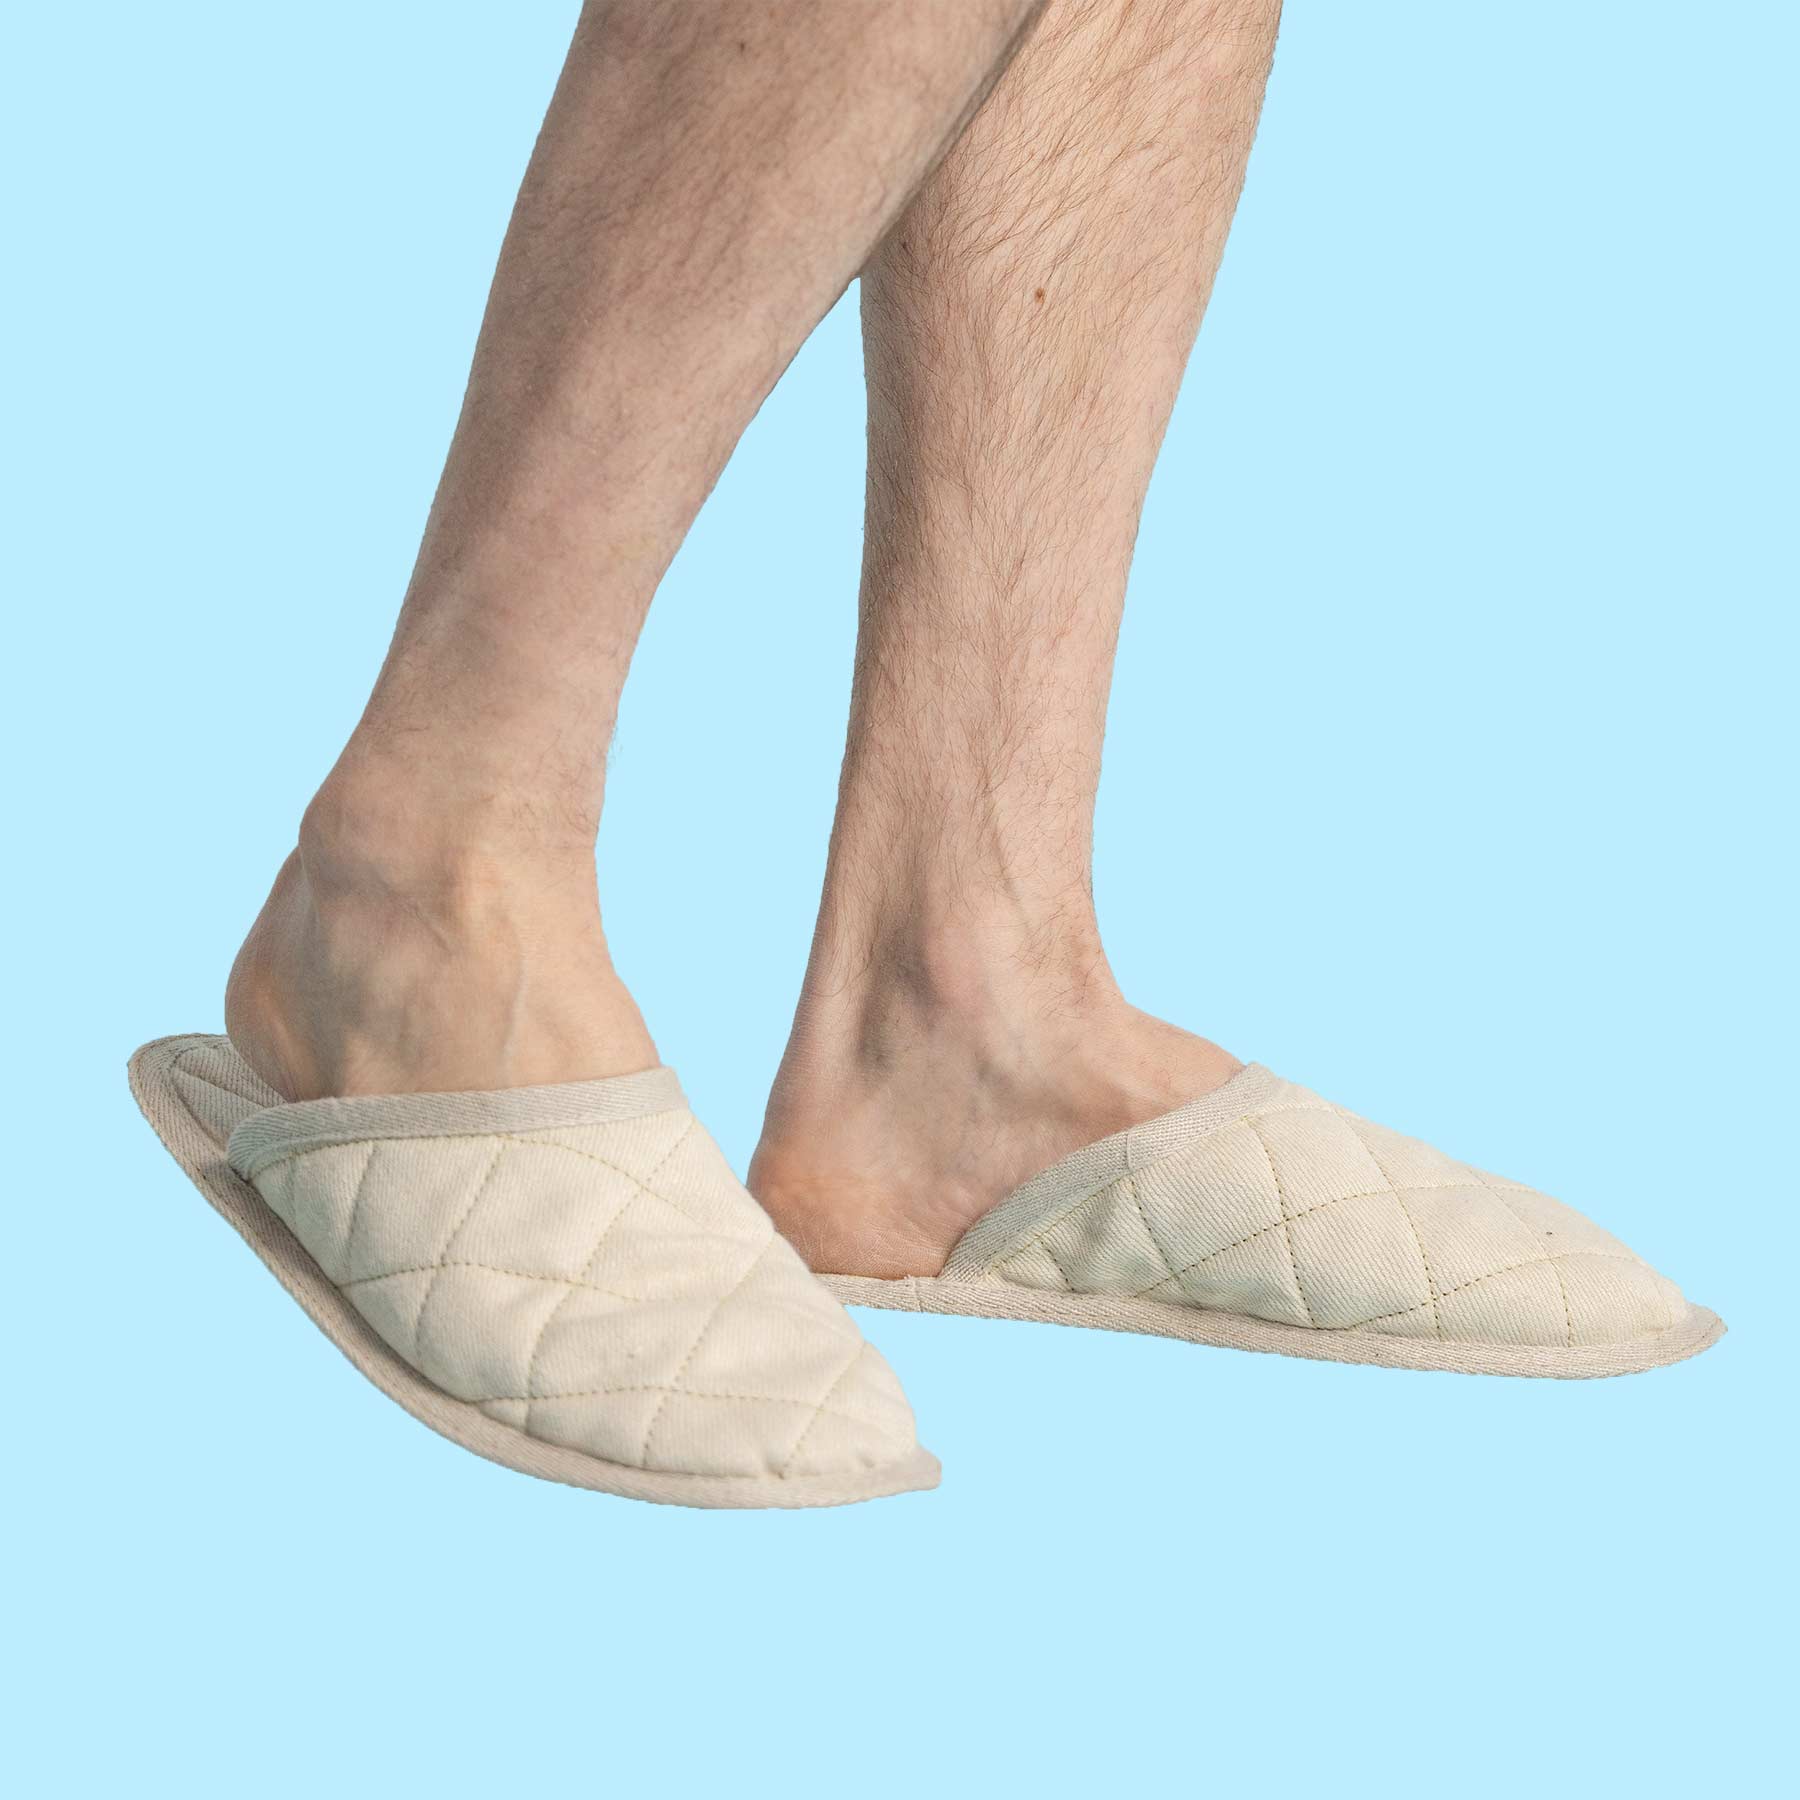 KYOTO 100% Organic Hemp Slippers (Men's & Women's Sizes)